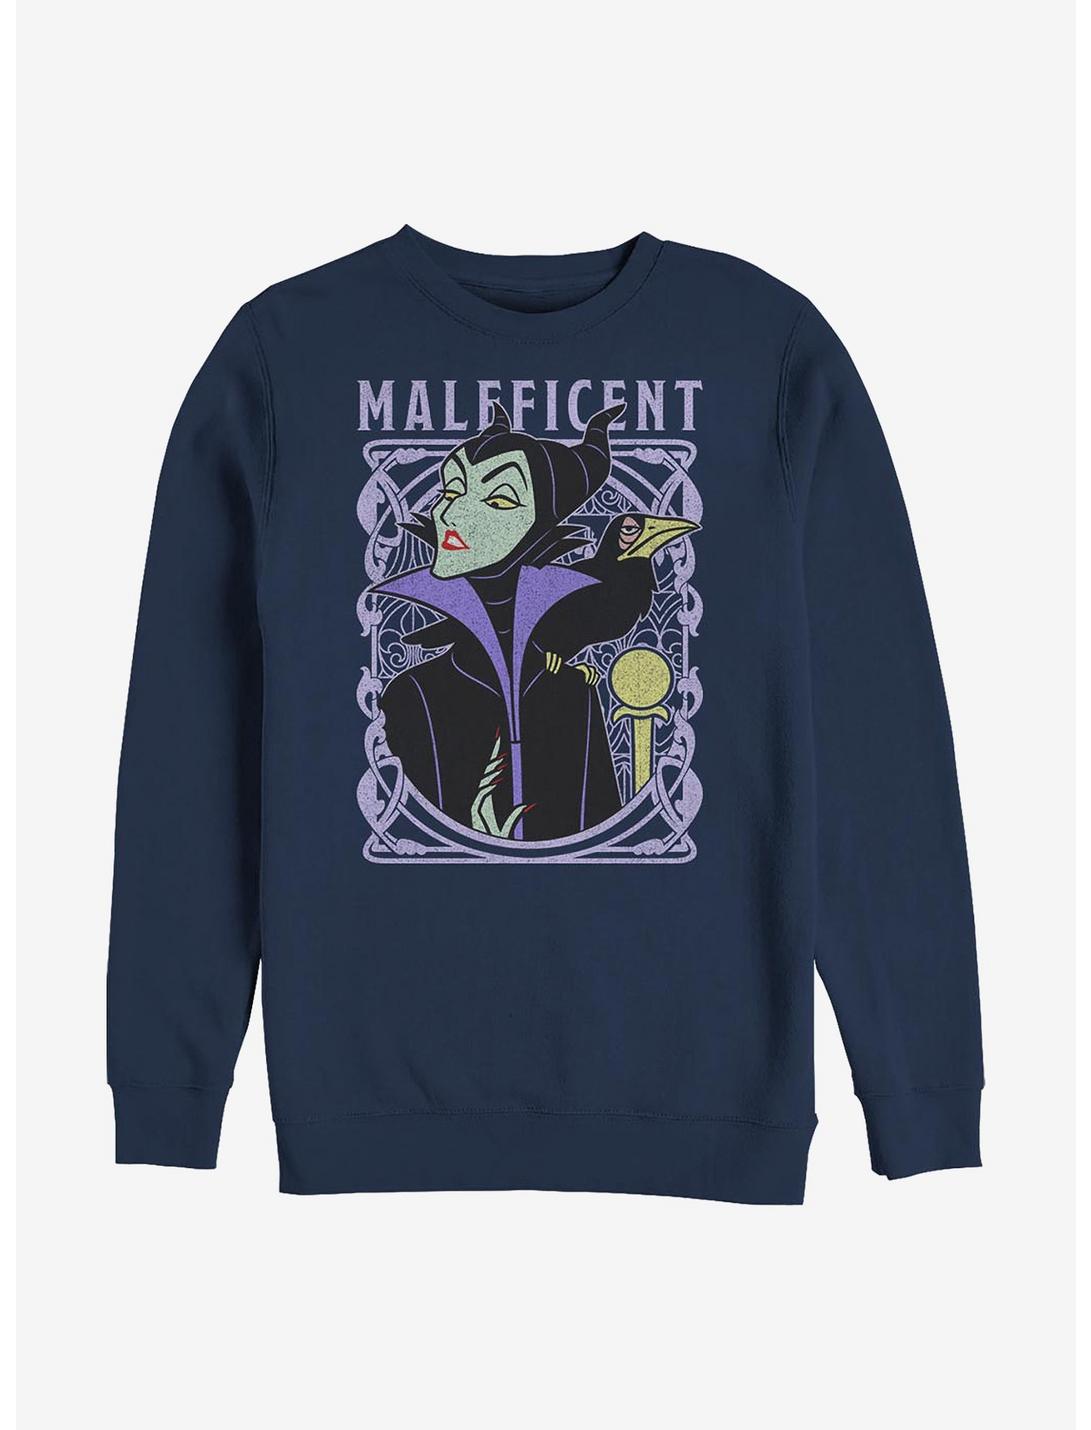 Disney Sleeping Beauty Maleficent Her Excellency Sweatshirt, NAVY, hi-res